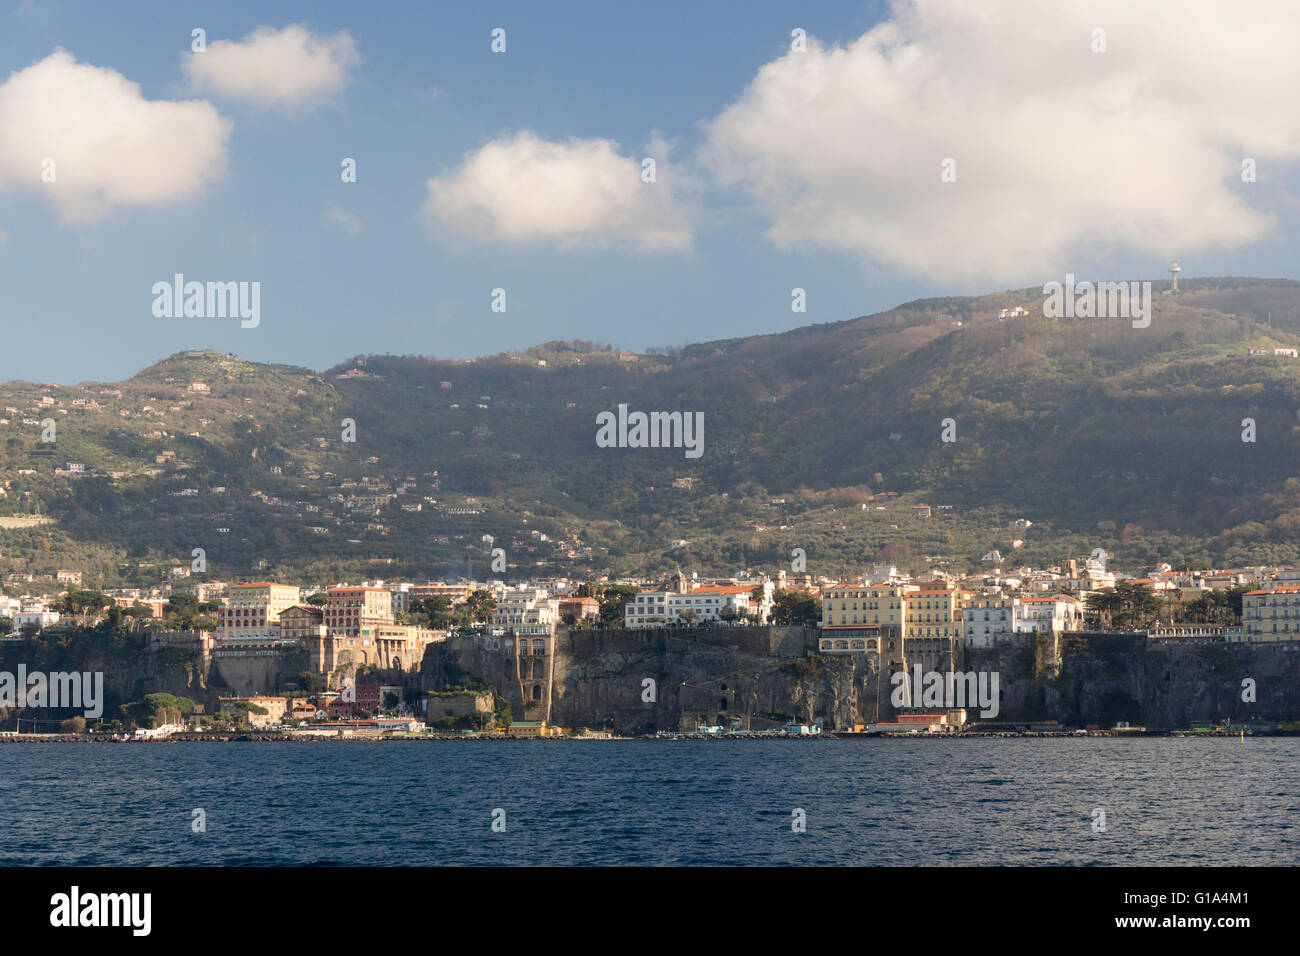 La costa de Sorrento, los acantilados, los hoteles en lo alto de los acantilados y los edificios del Golfo de Nápoles y las colinas de la Península Sorrentina detrás. Italia Foto de stock